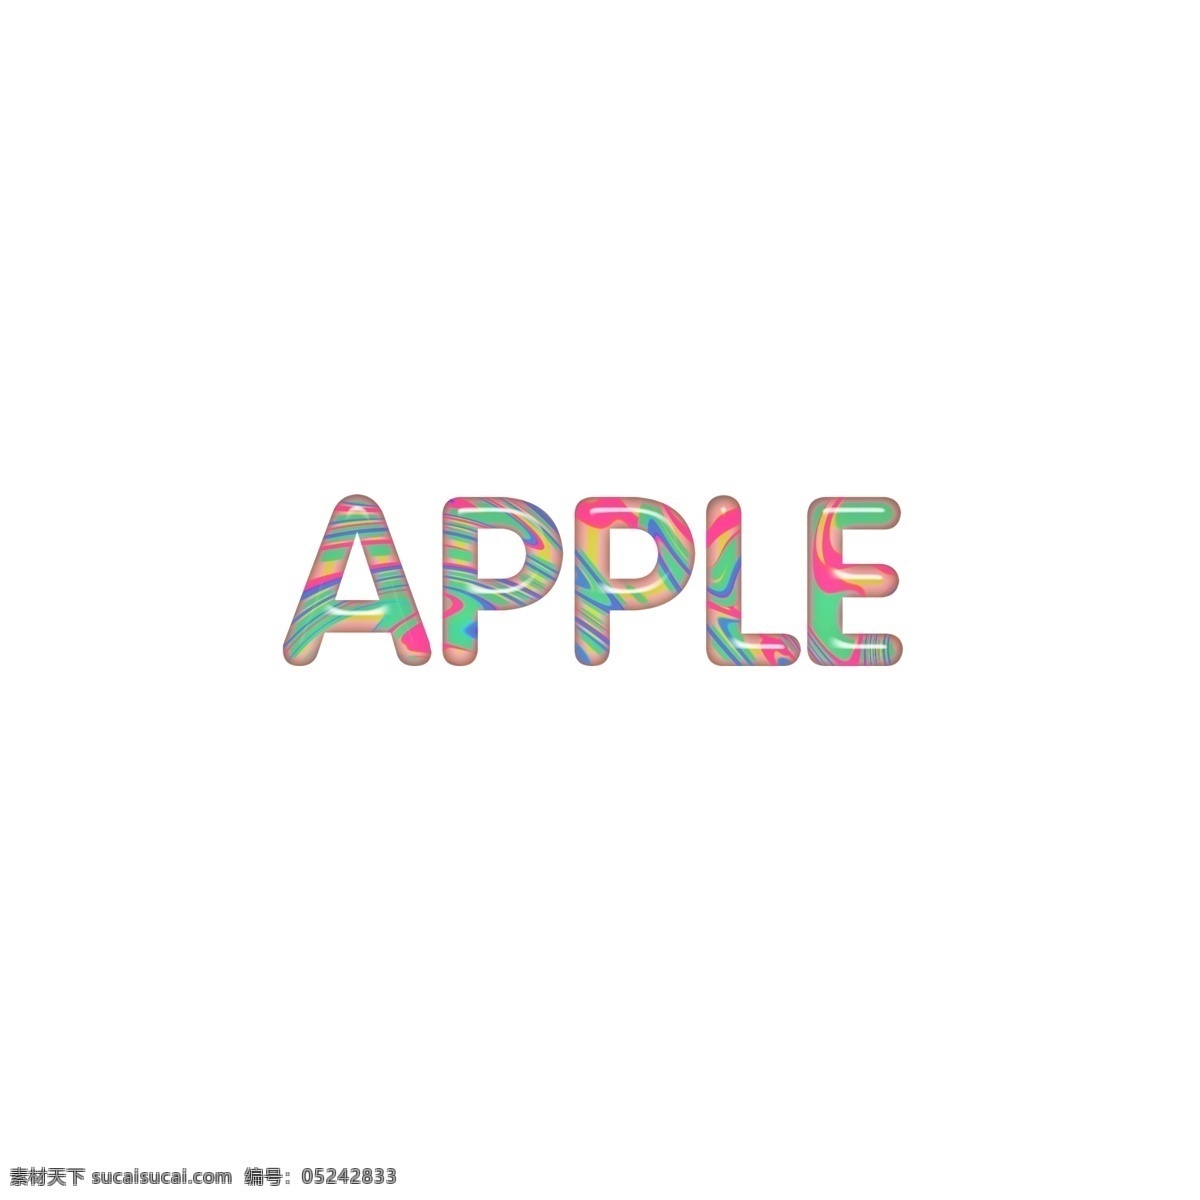 英文 字母 糖果 色系 立体 apple 苹果 卡通英文 英语 字体设计字母 装饰排版 通用英文 艺术字 单词 糖果色 流行趋势 儿童 字体